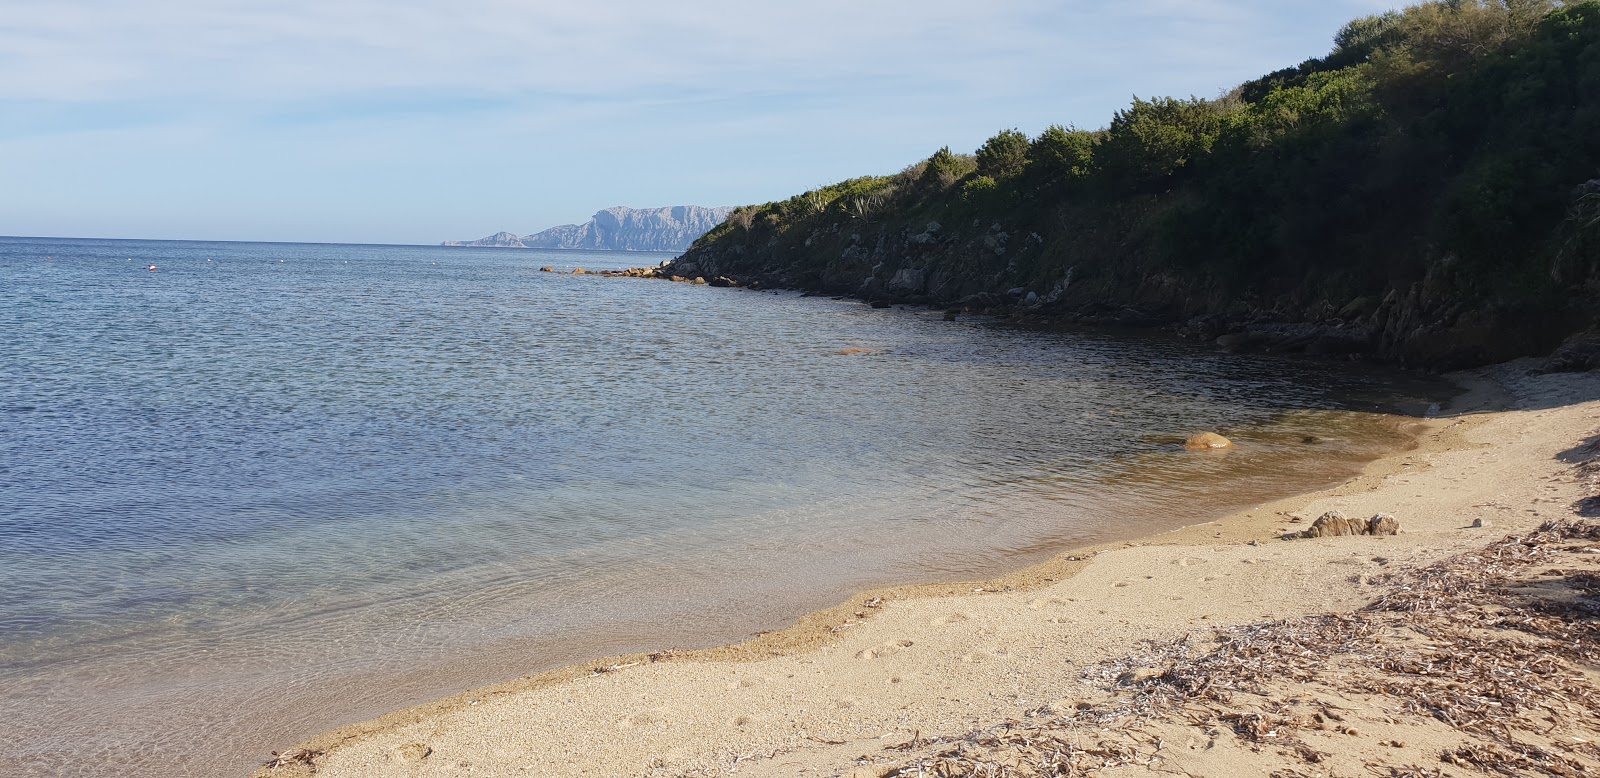 Foto de Spiaggia S'abba e sa Pedra com água cristalina superfície